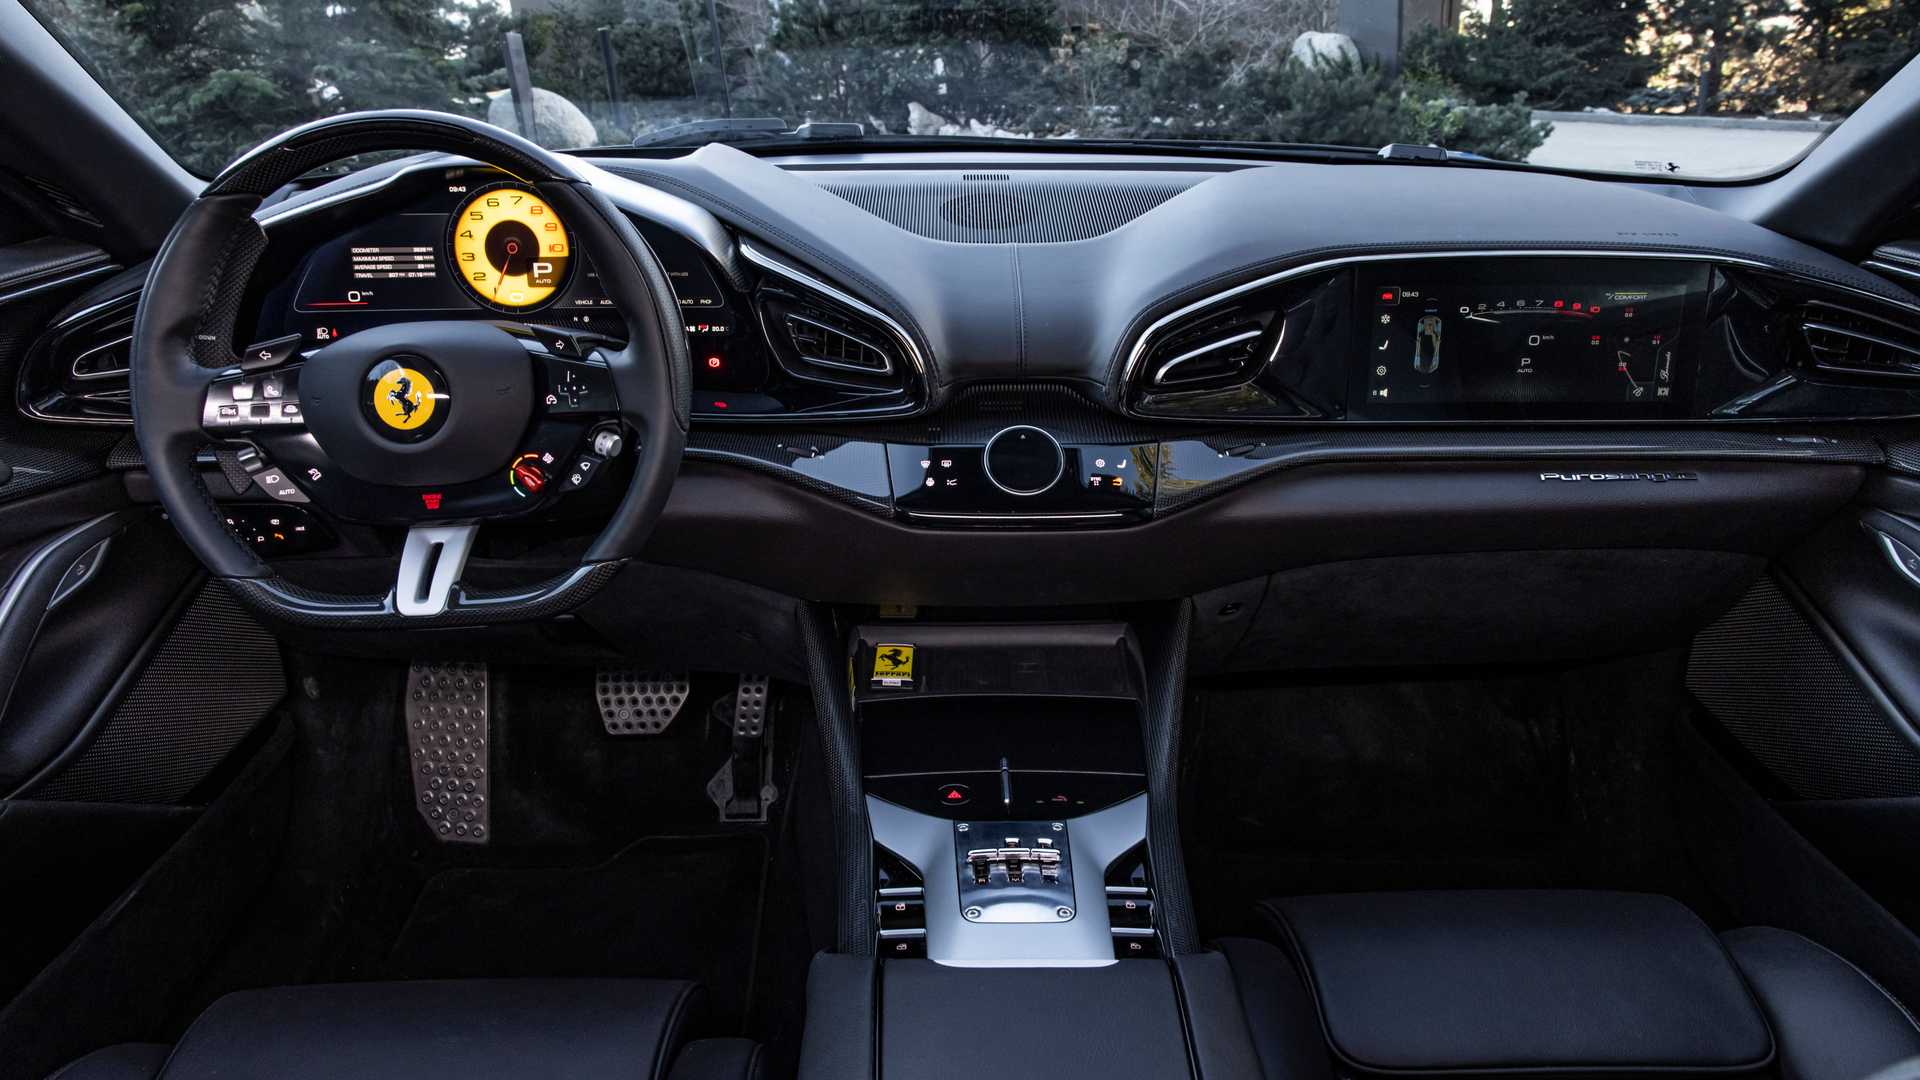 Ai rồi cũng phải thay đổi thôi: Ferrari sắp sử dụng màn hình xịn từ Samsung - Ảnh 2.